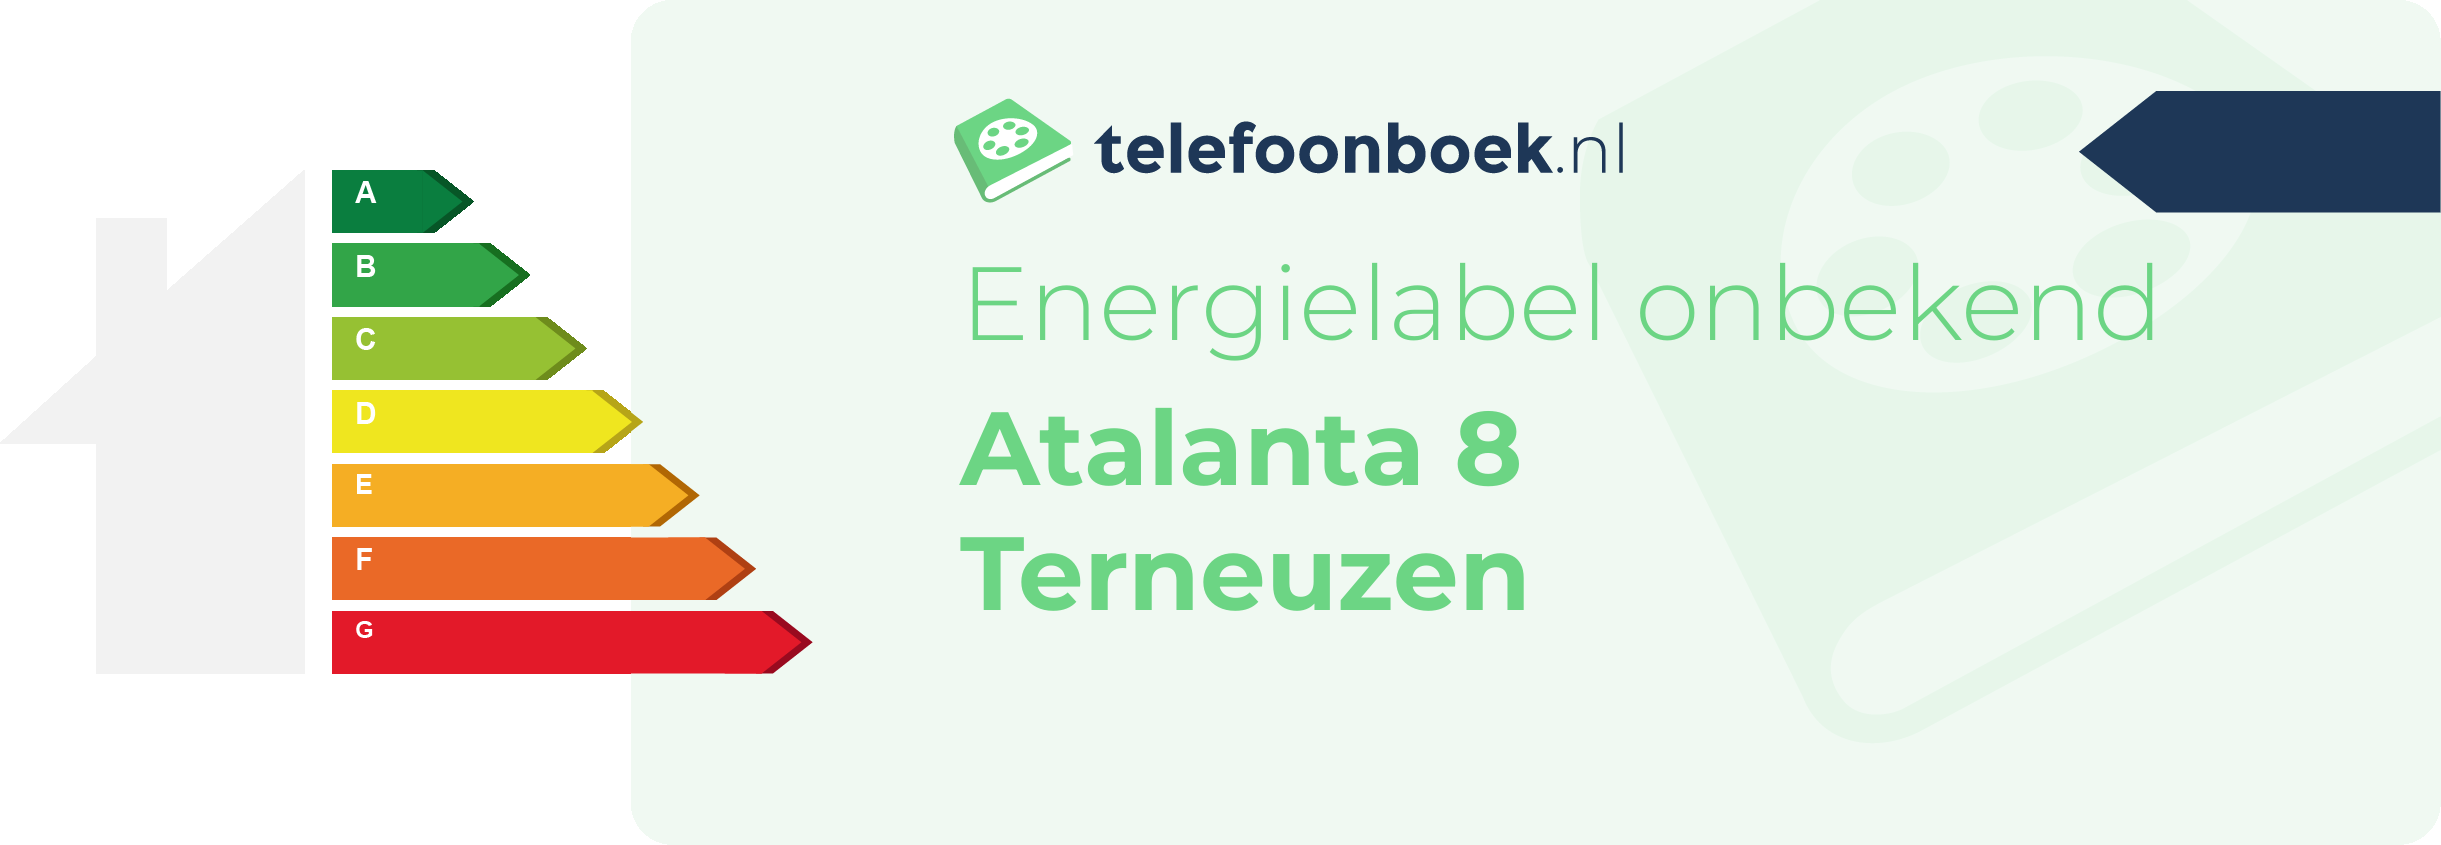 Energielabel Atalanta 8 Terneuzen